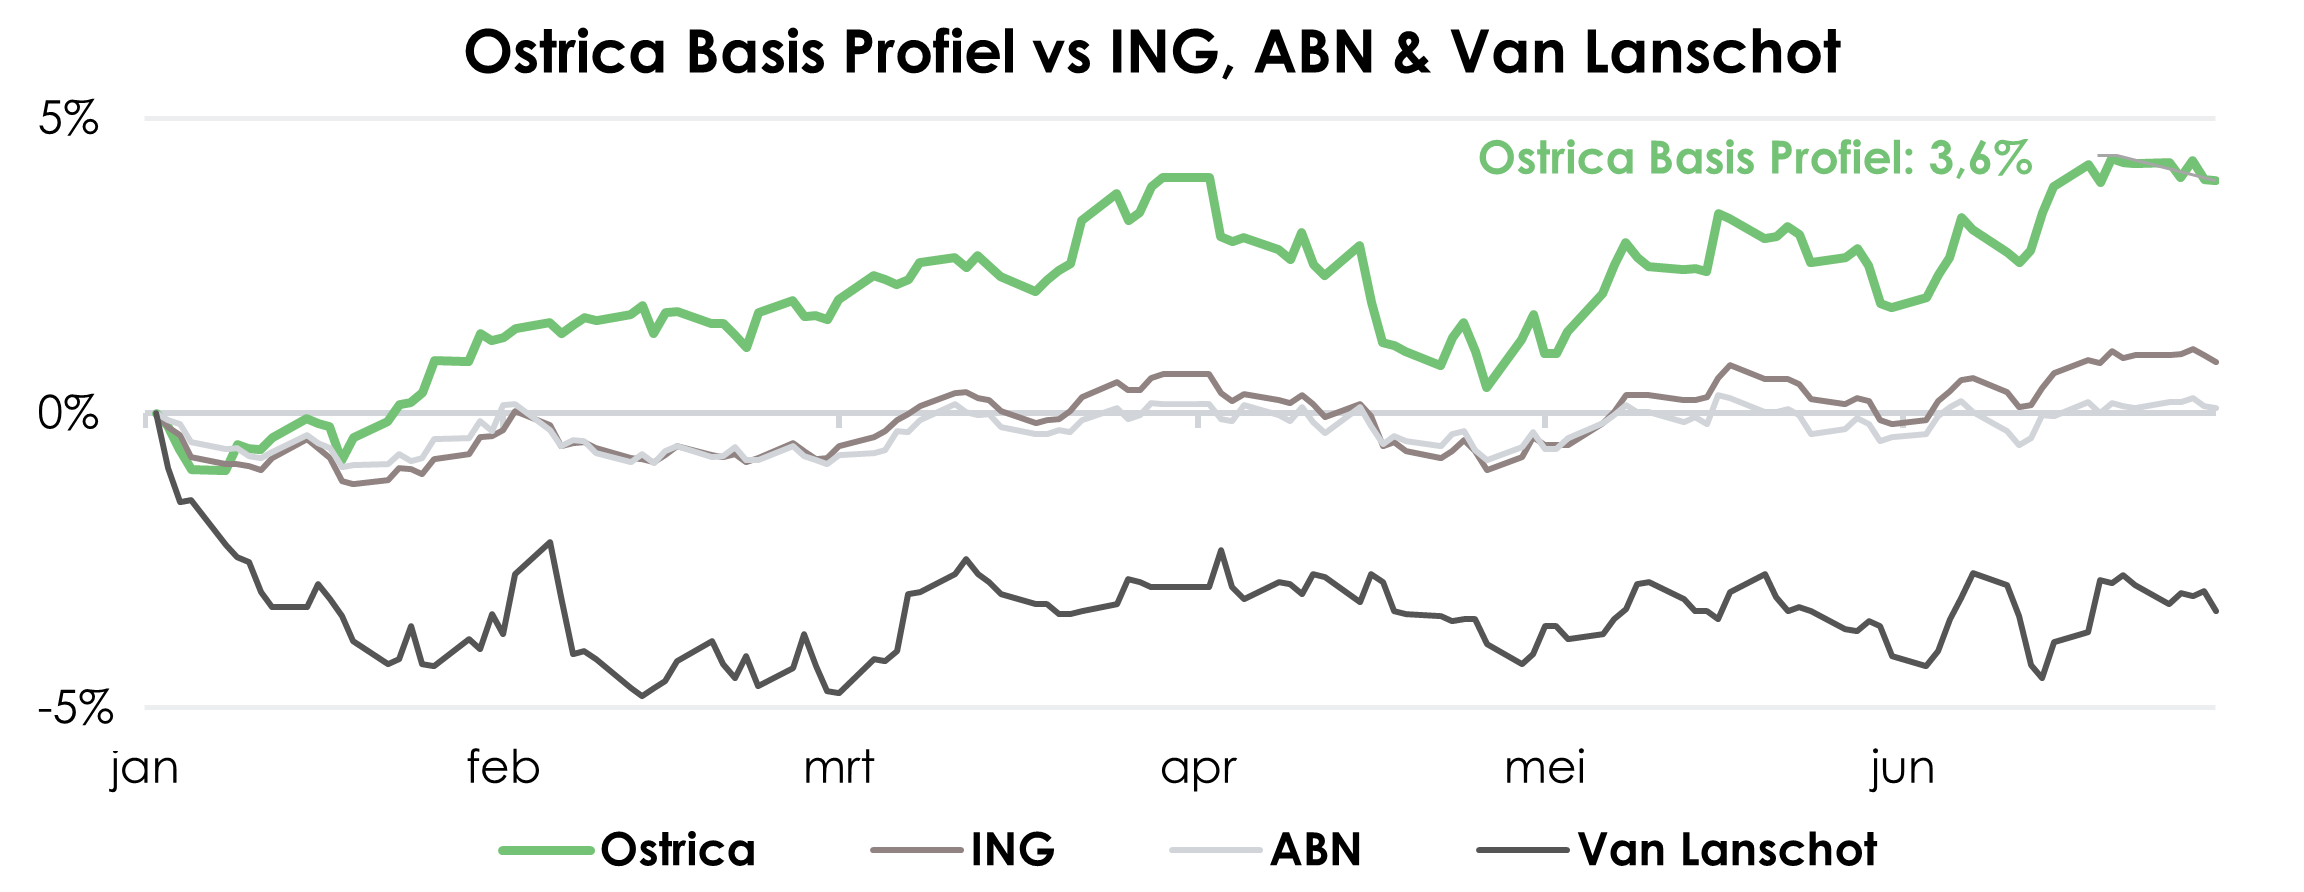 Ostrica Basis Profiel vergeleken met ING, ABN & Van Lanschot | Ostrica Vermogensbeheer